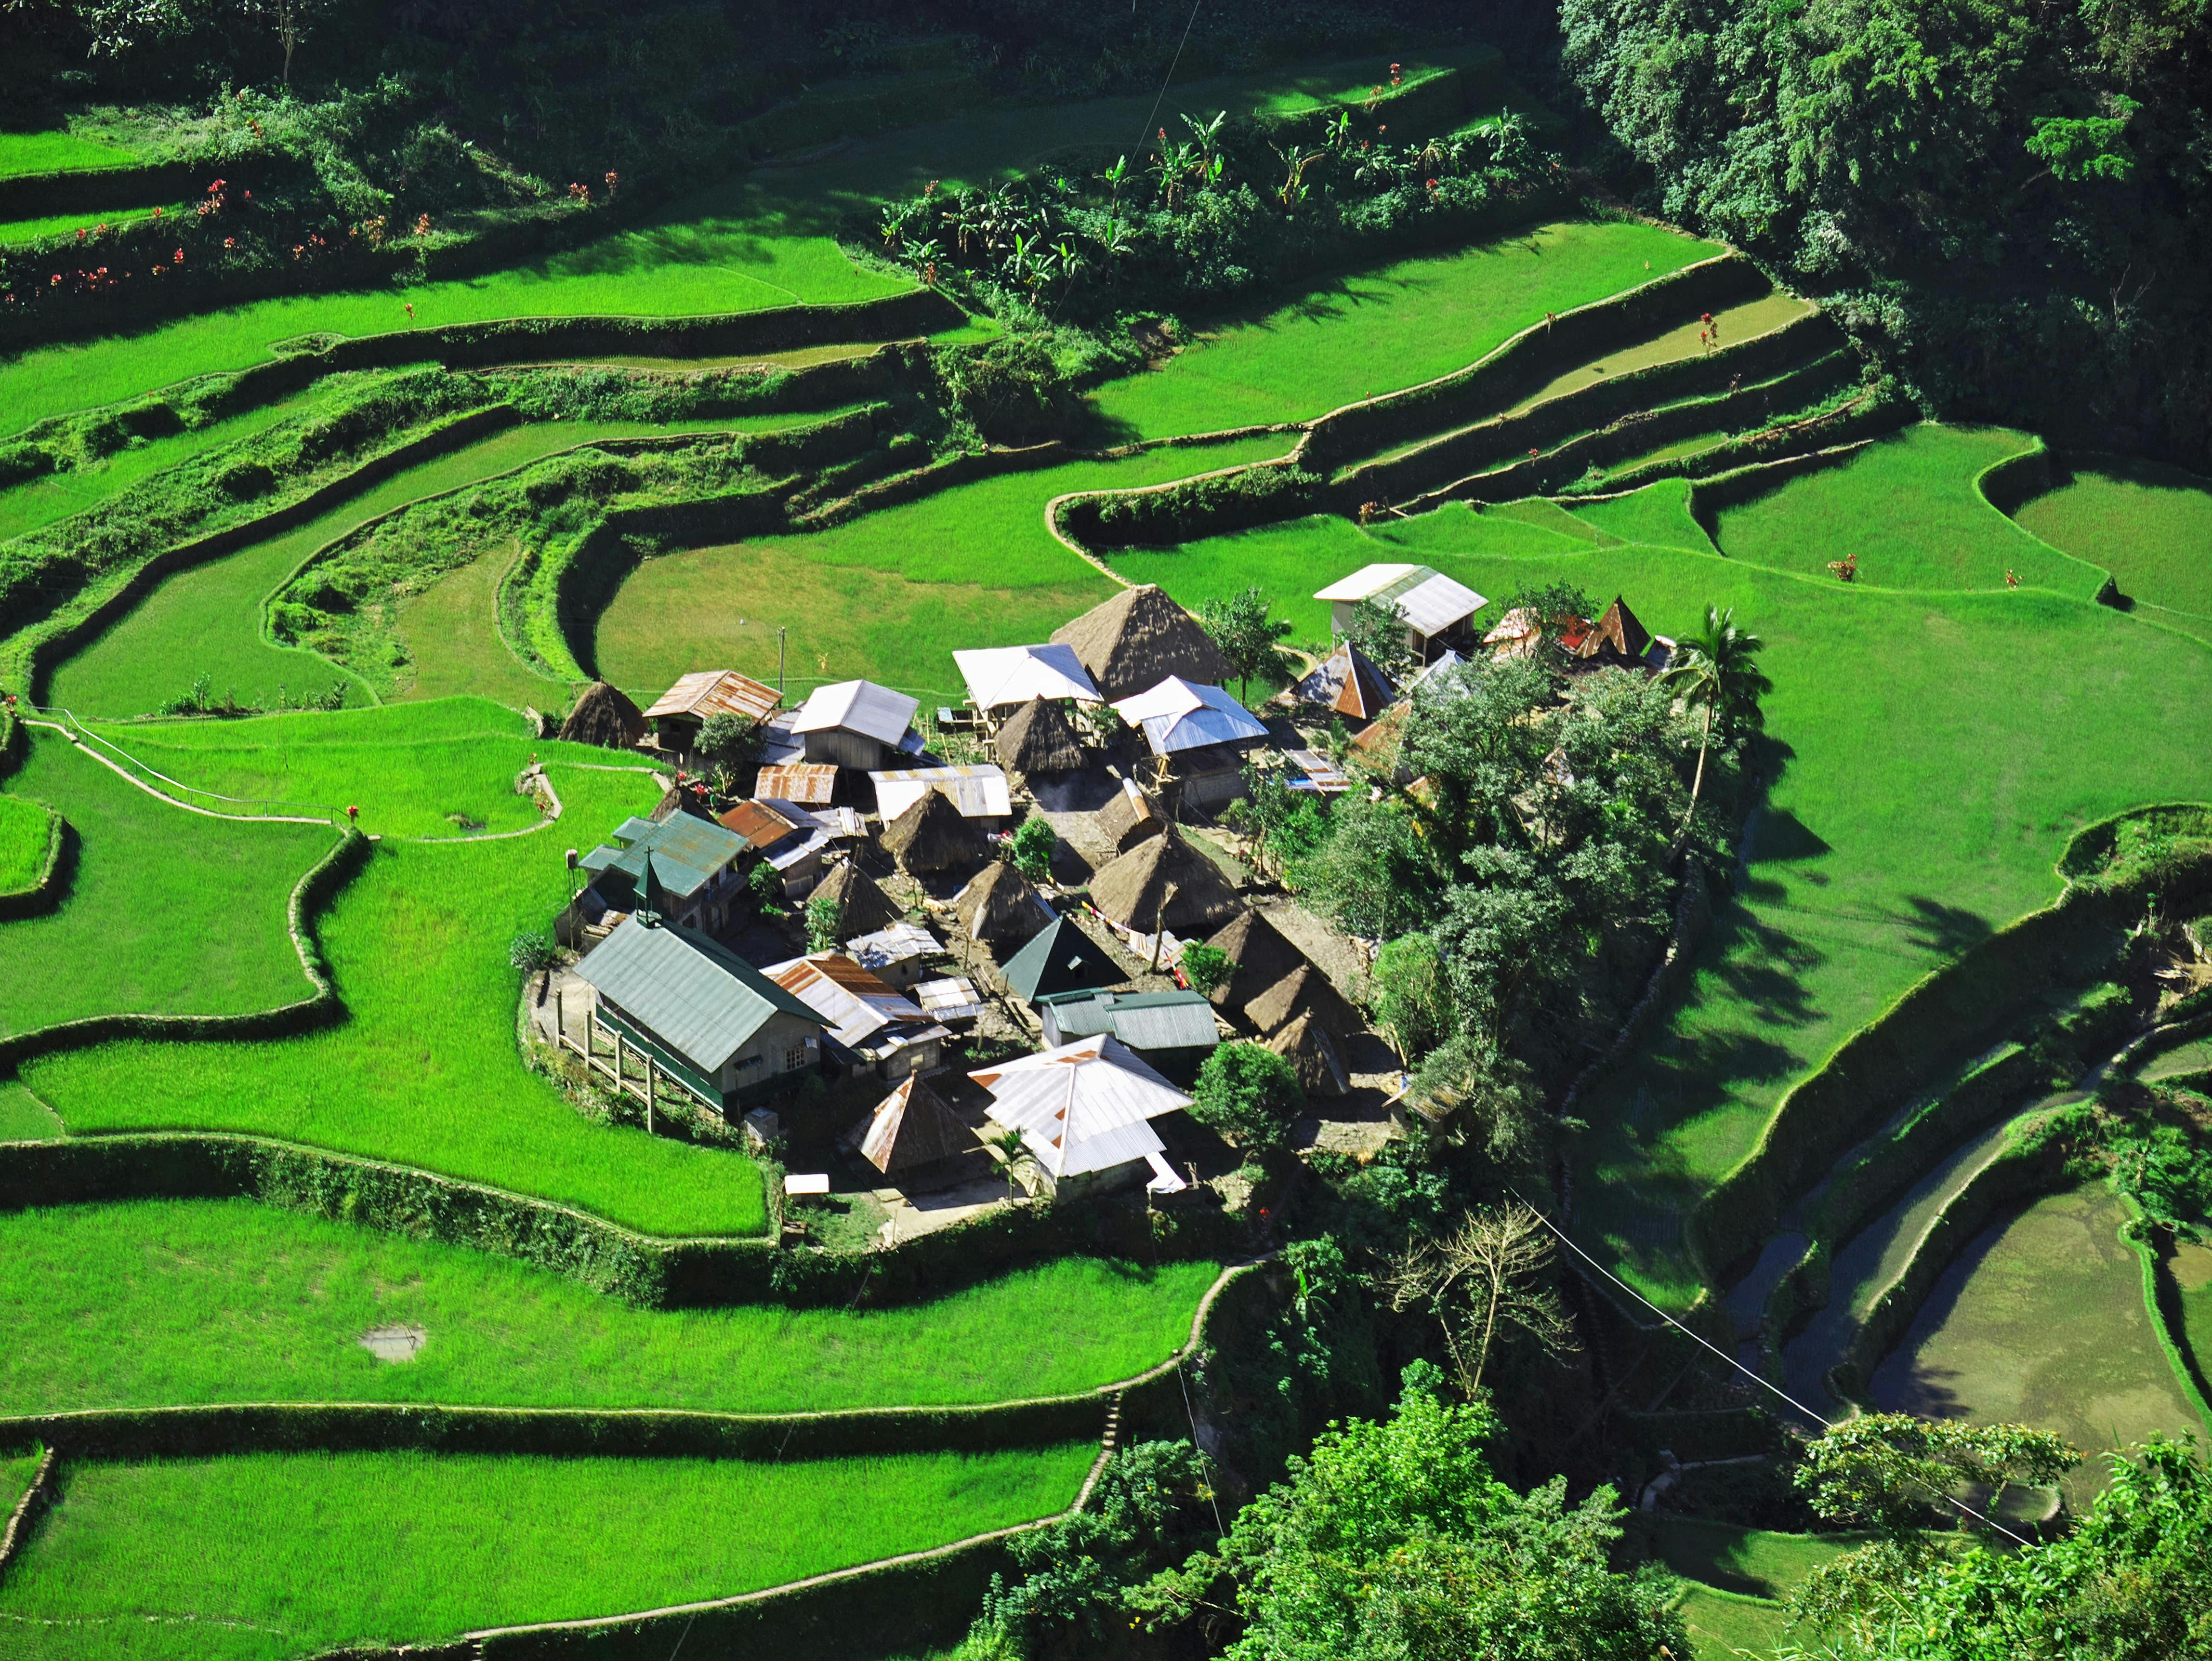 Bangaan Village in Benguet